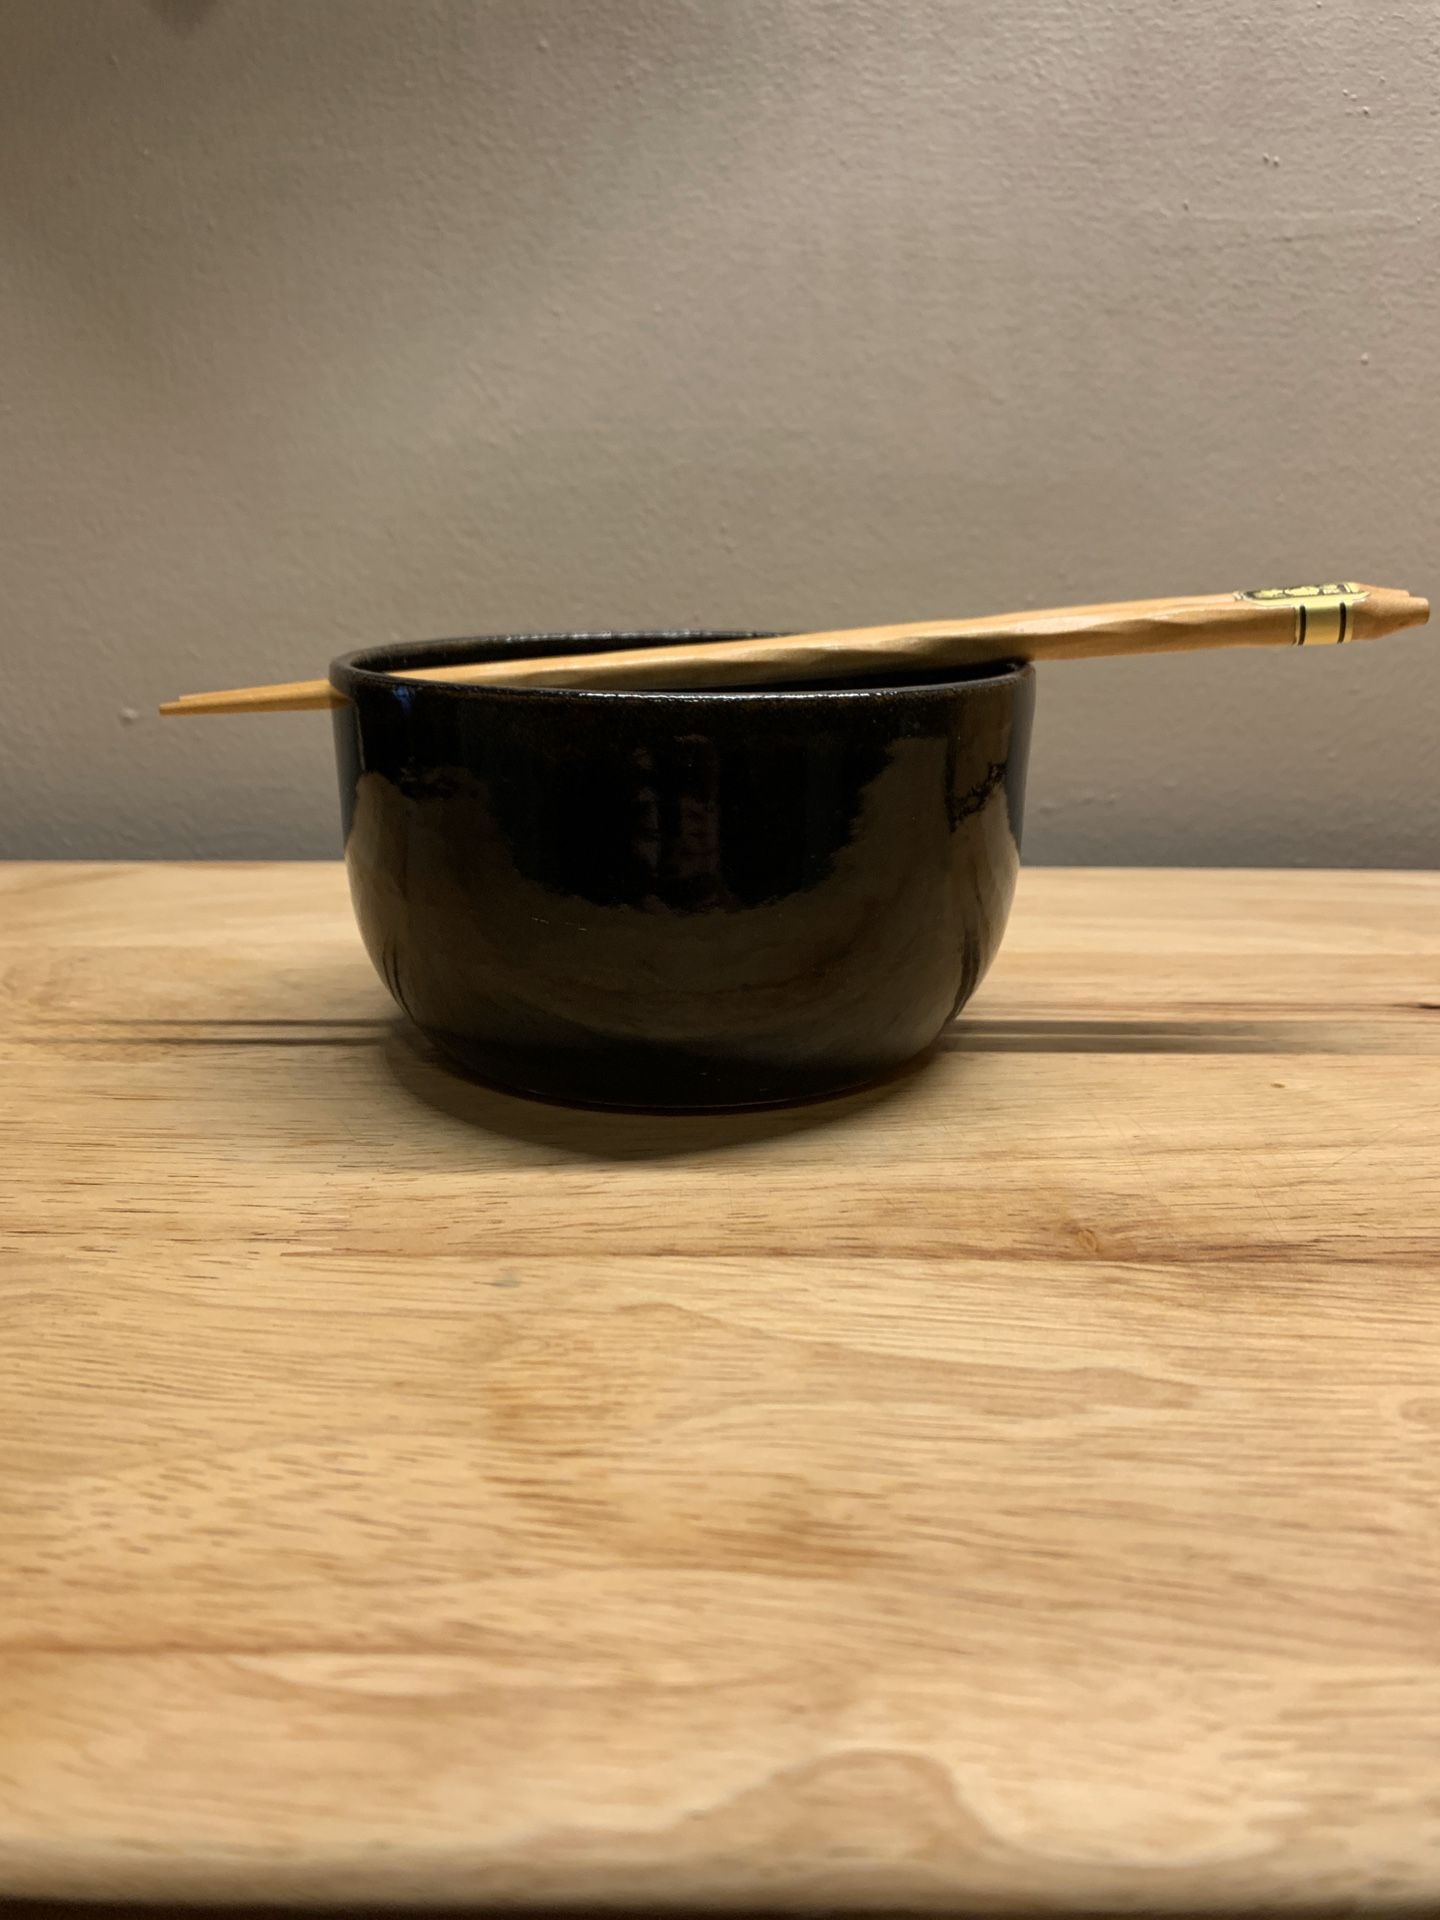 Ramen bowl with chopsticks